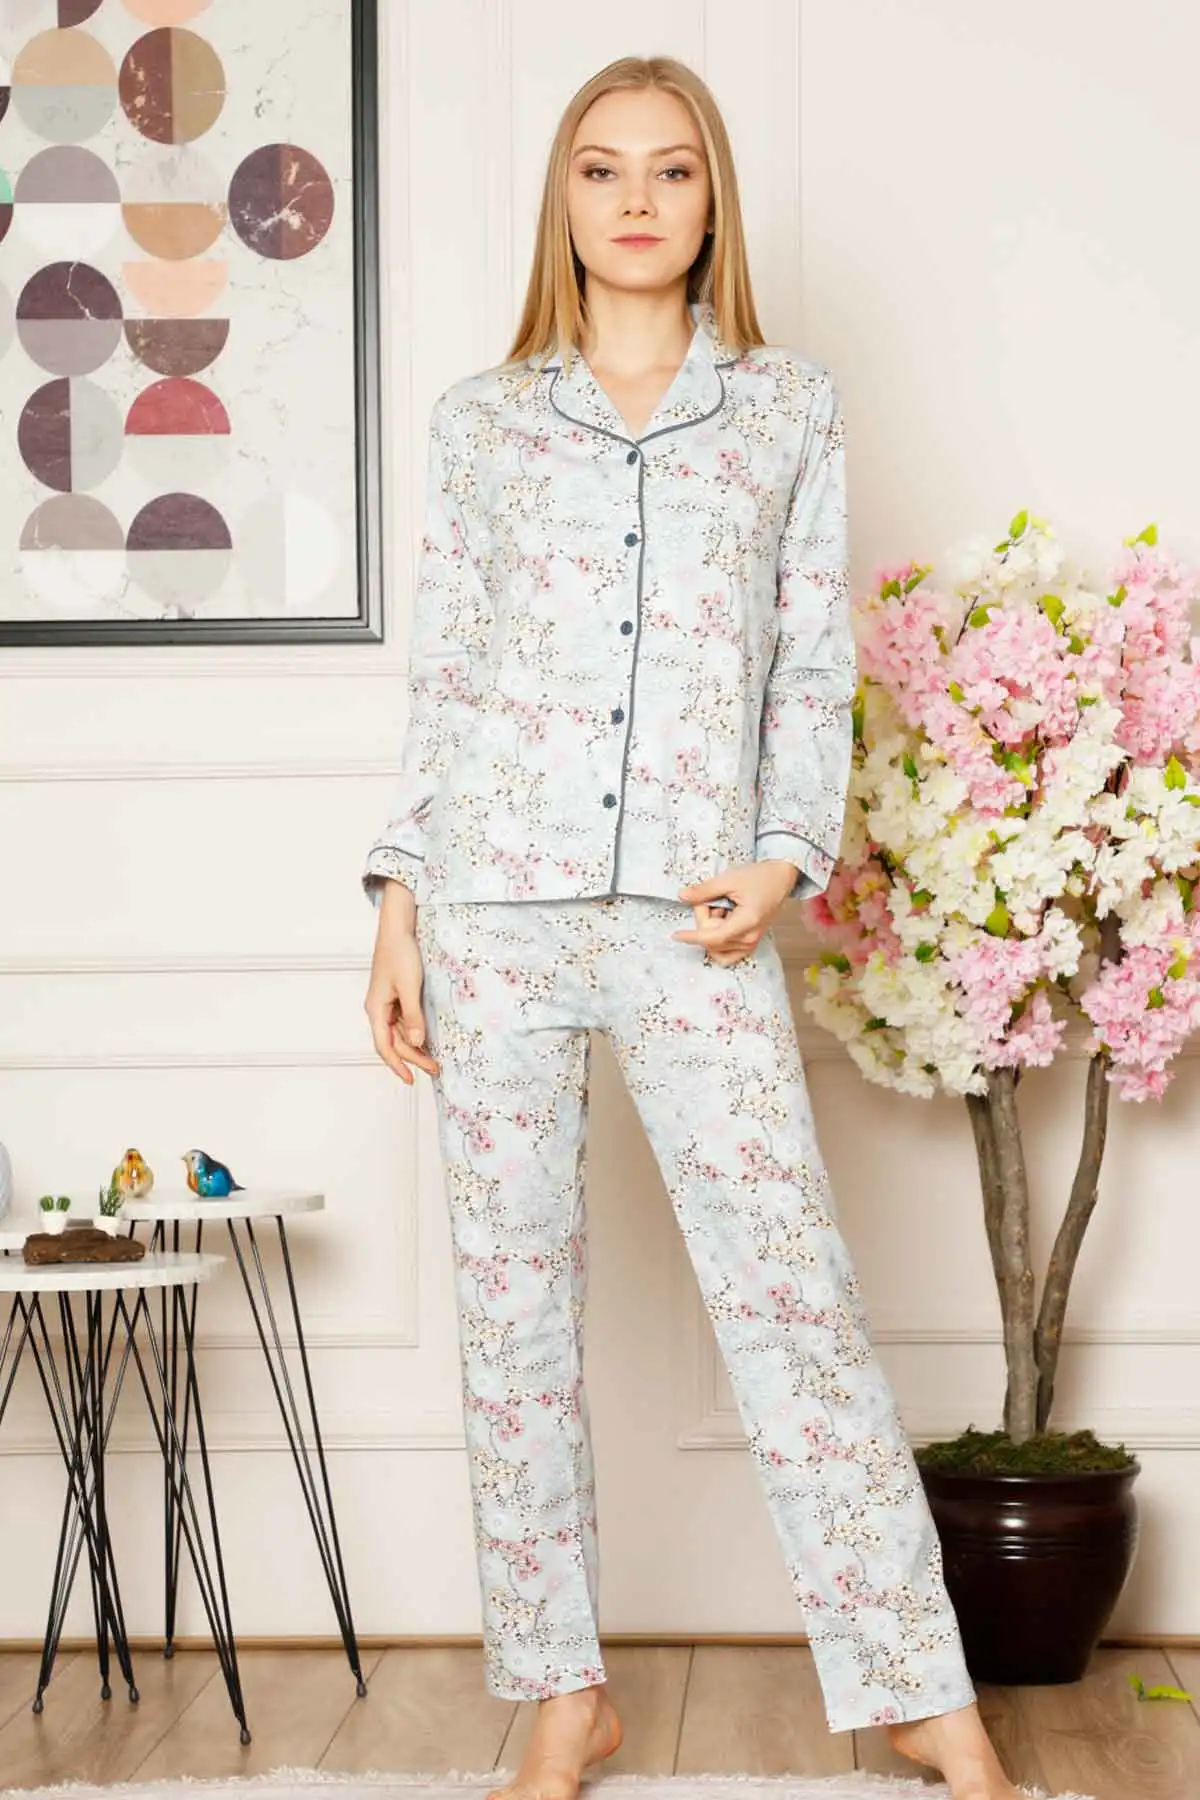 

Yeni K Bahar Kadn Pijama Setleri Uzun Kol Sleepwear Pijama Takm Kaln Scak Homewear Overnight Dressing Gown Desenli